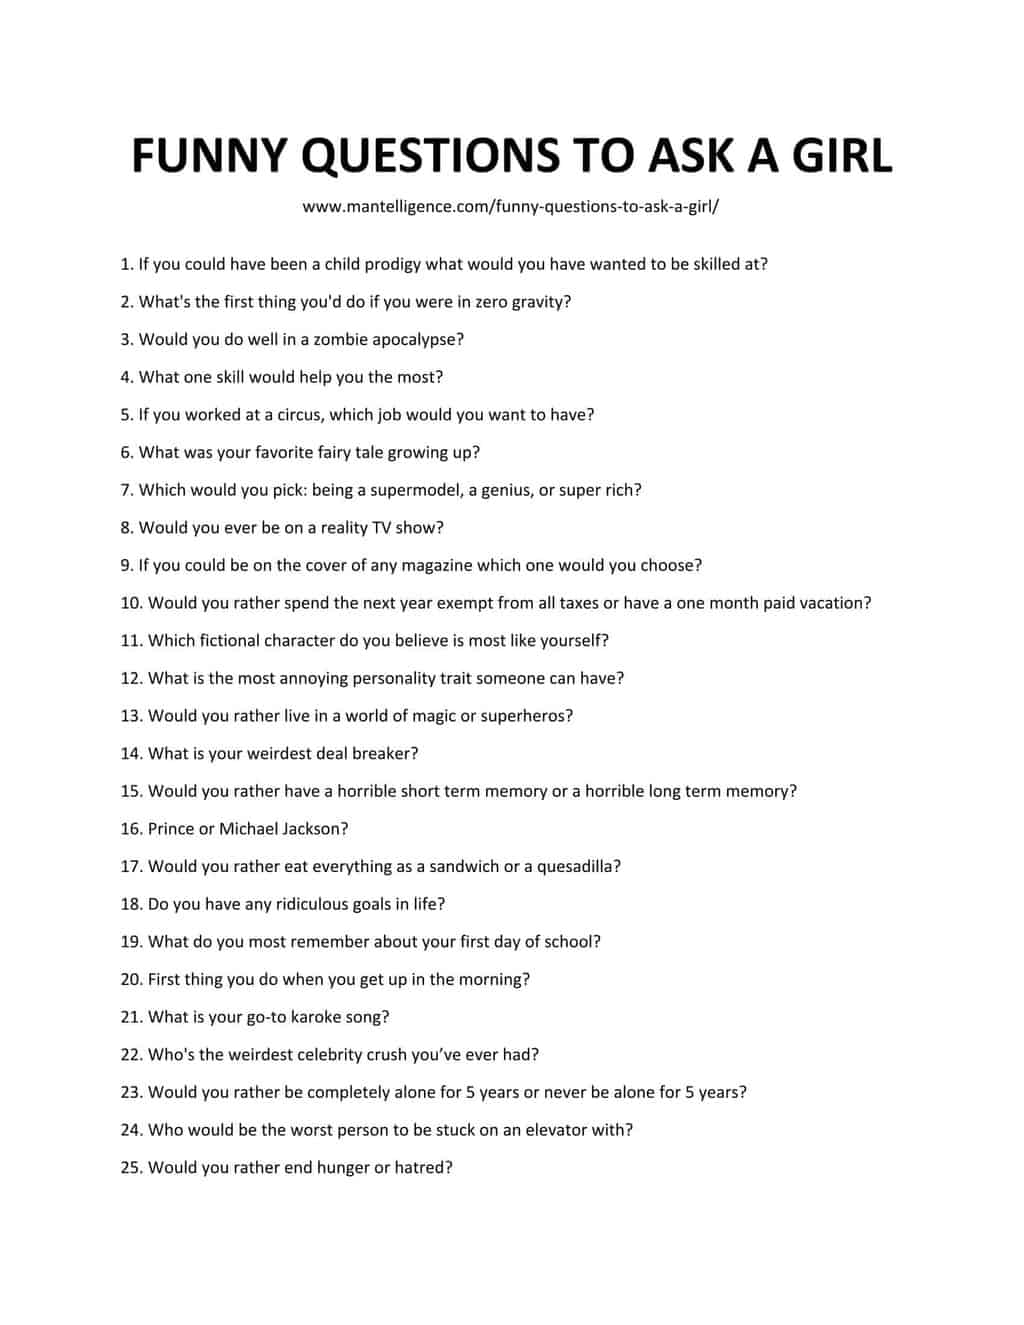 random funny questions